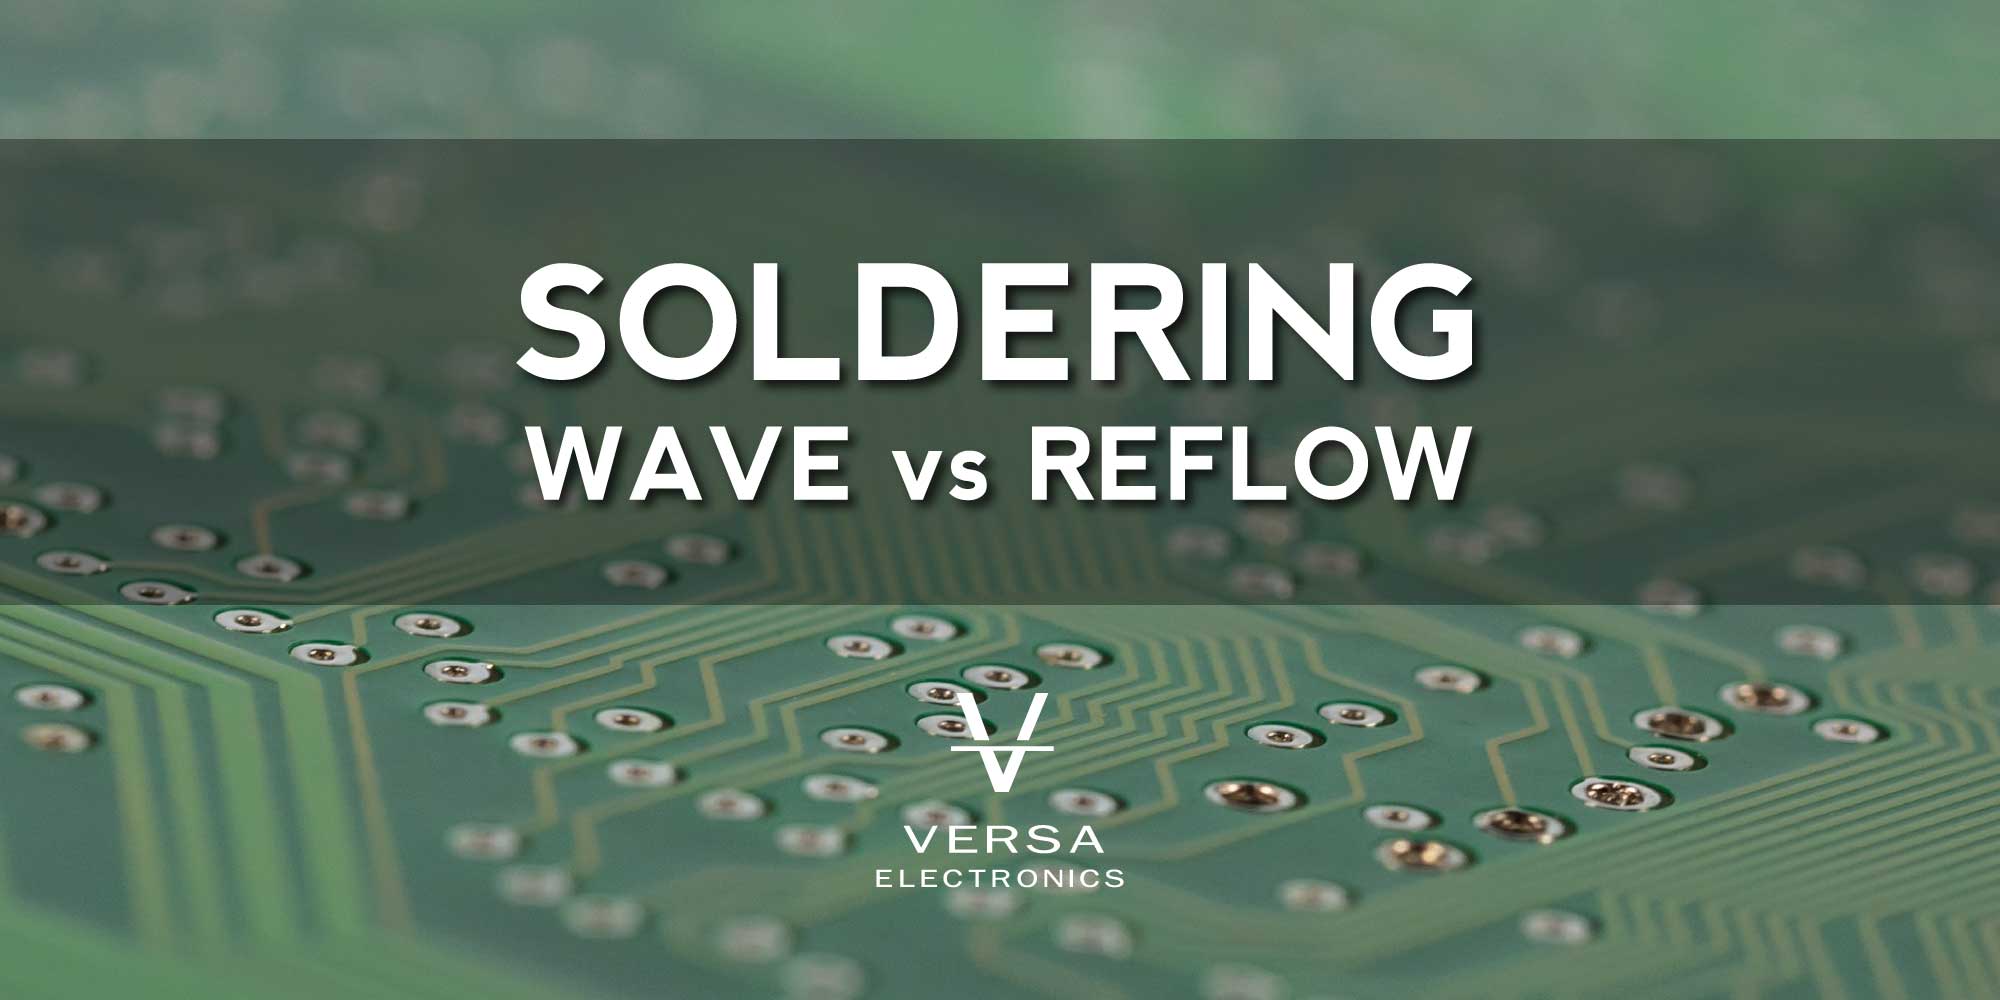 Wave Soldering vs Reflow Soldering